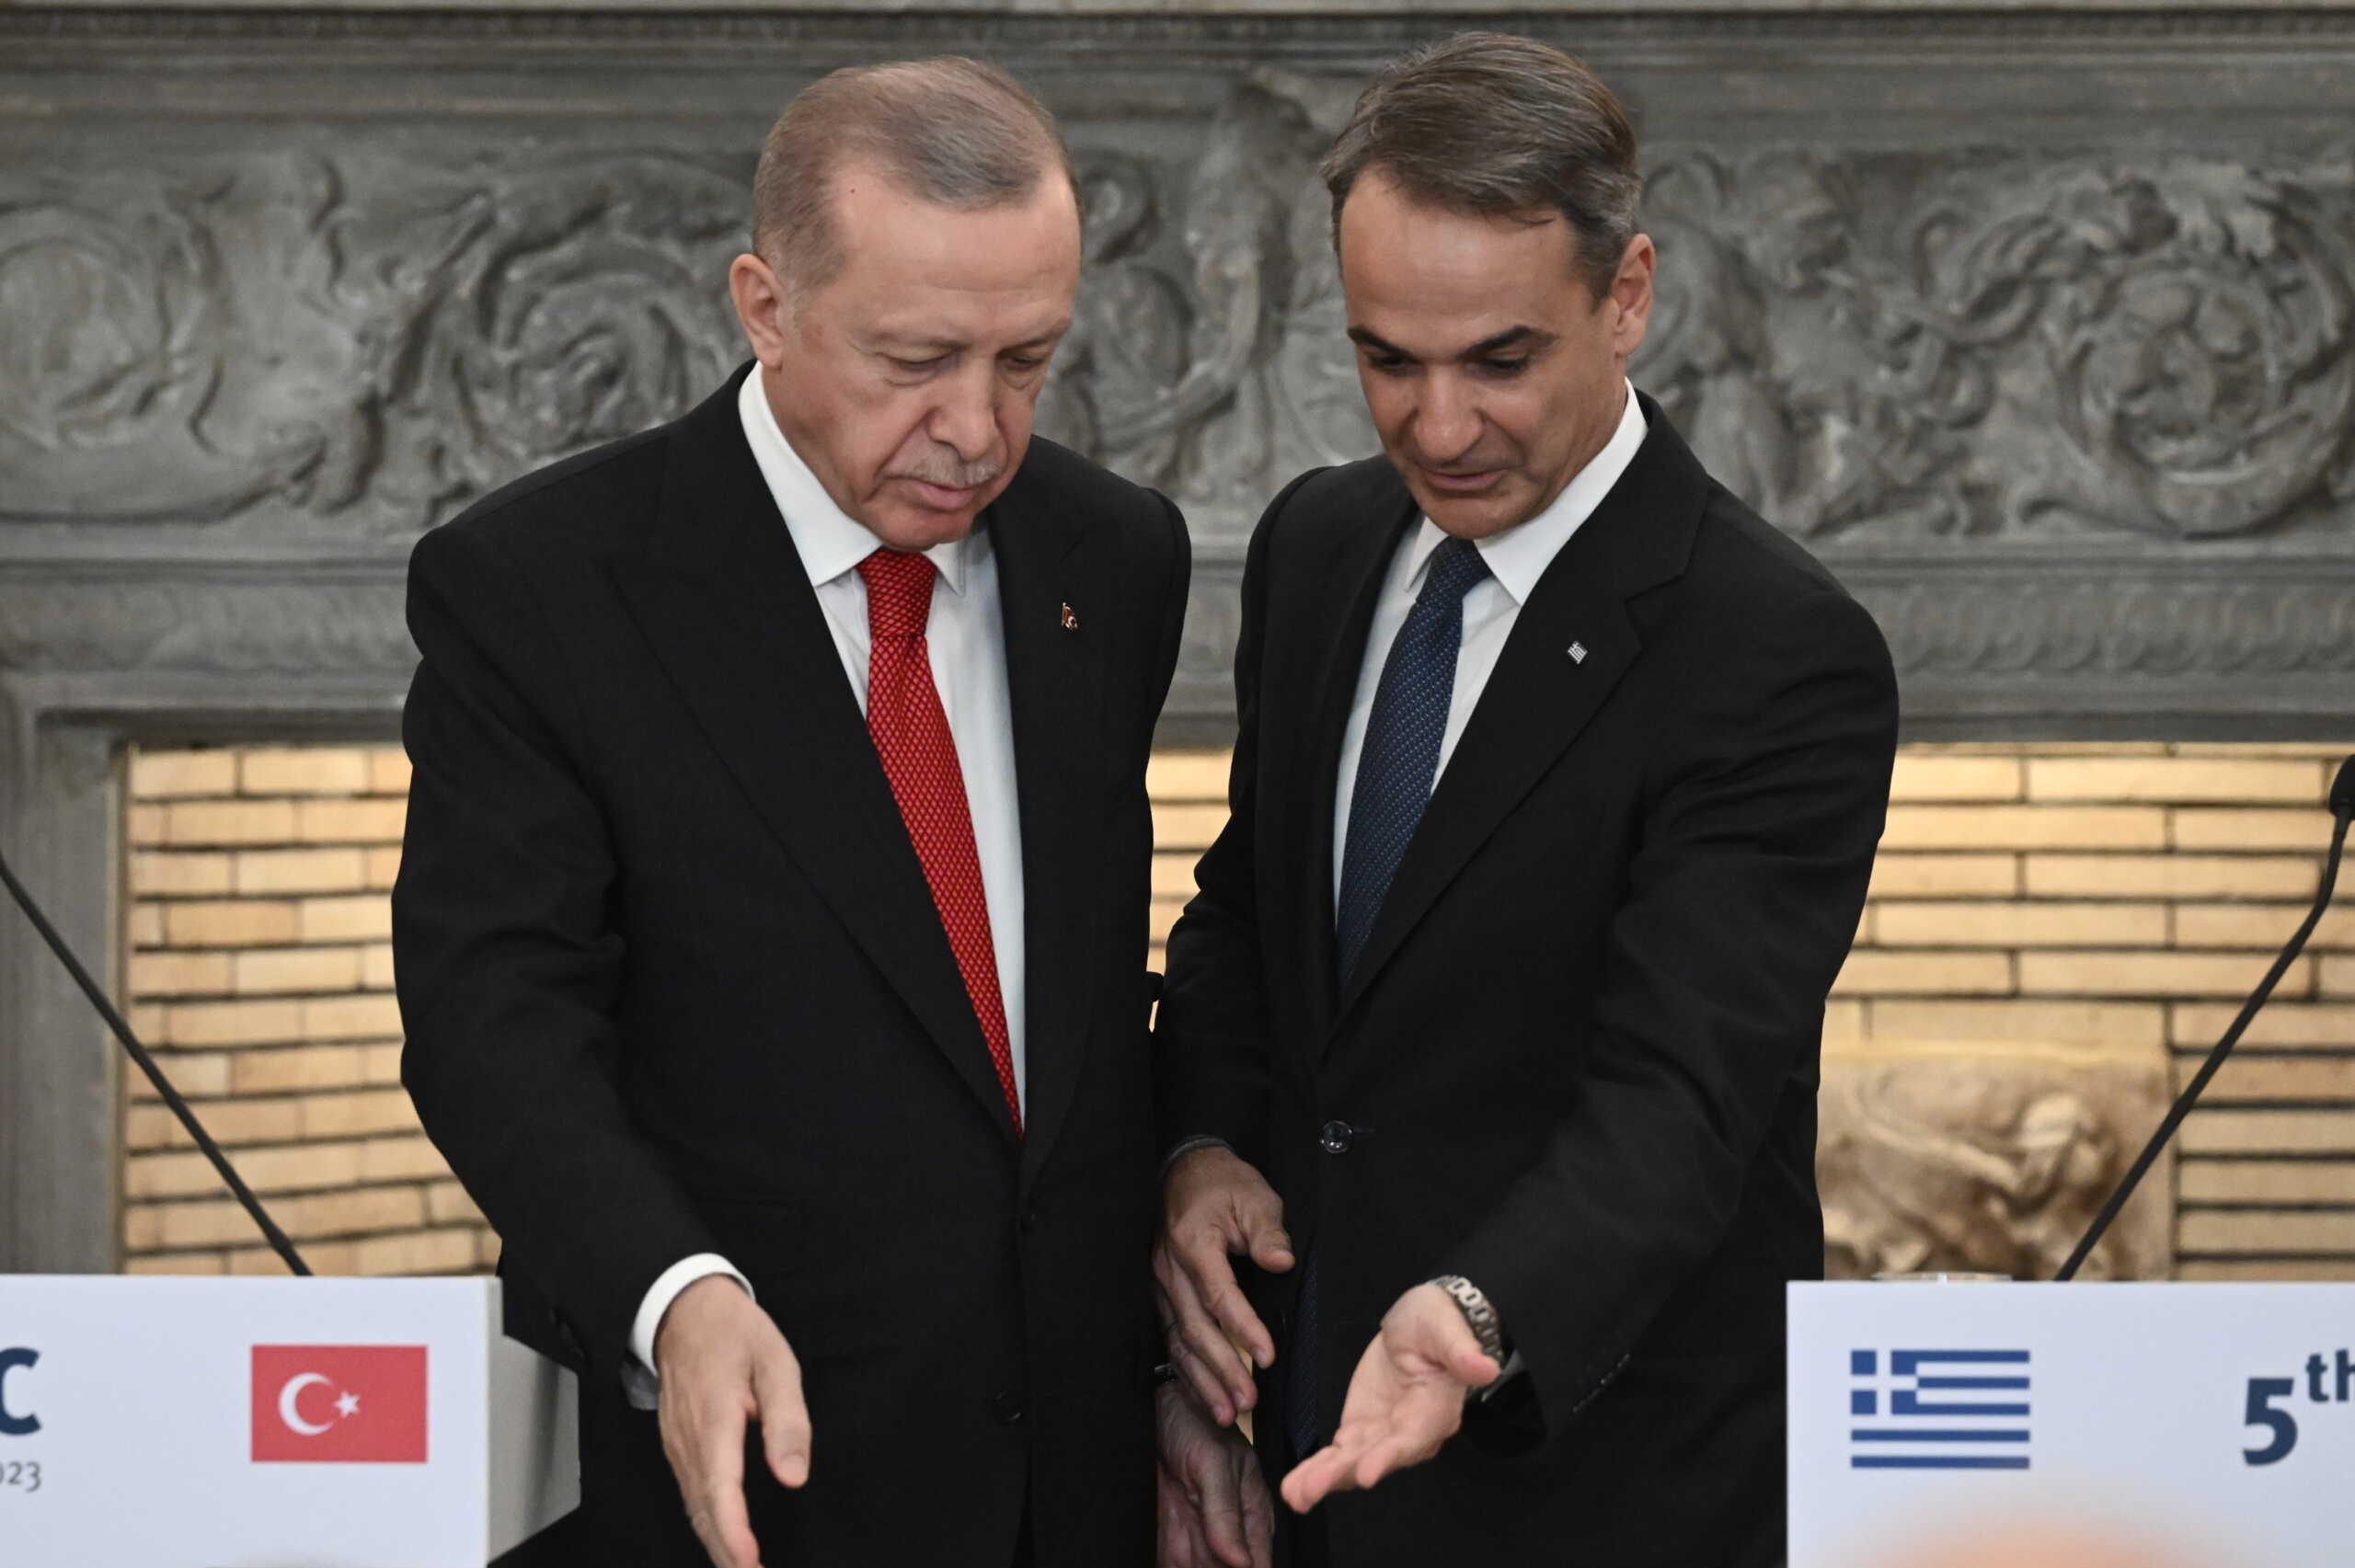 Ο Μητσοτάκης απάντησε στα περί «τουρκικής μειονότητας» του Ερντογάν:  «Η Θράκη παράδειγμα αρμονικής συνύπαρξης Χριστιανών και Μουσουλμάνων»